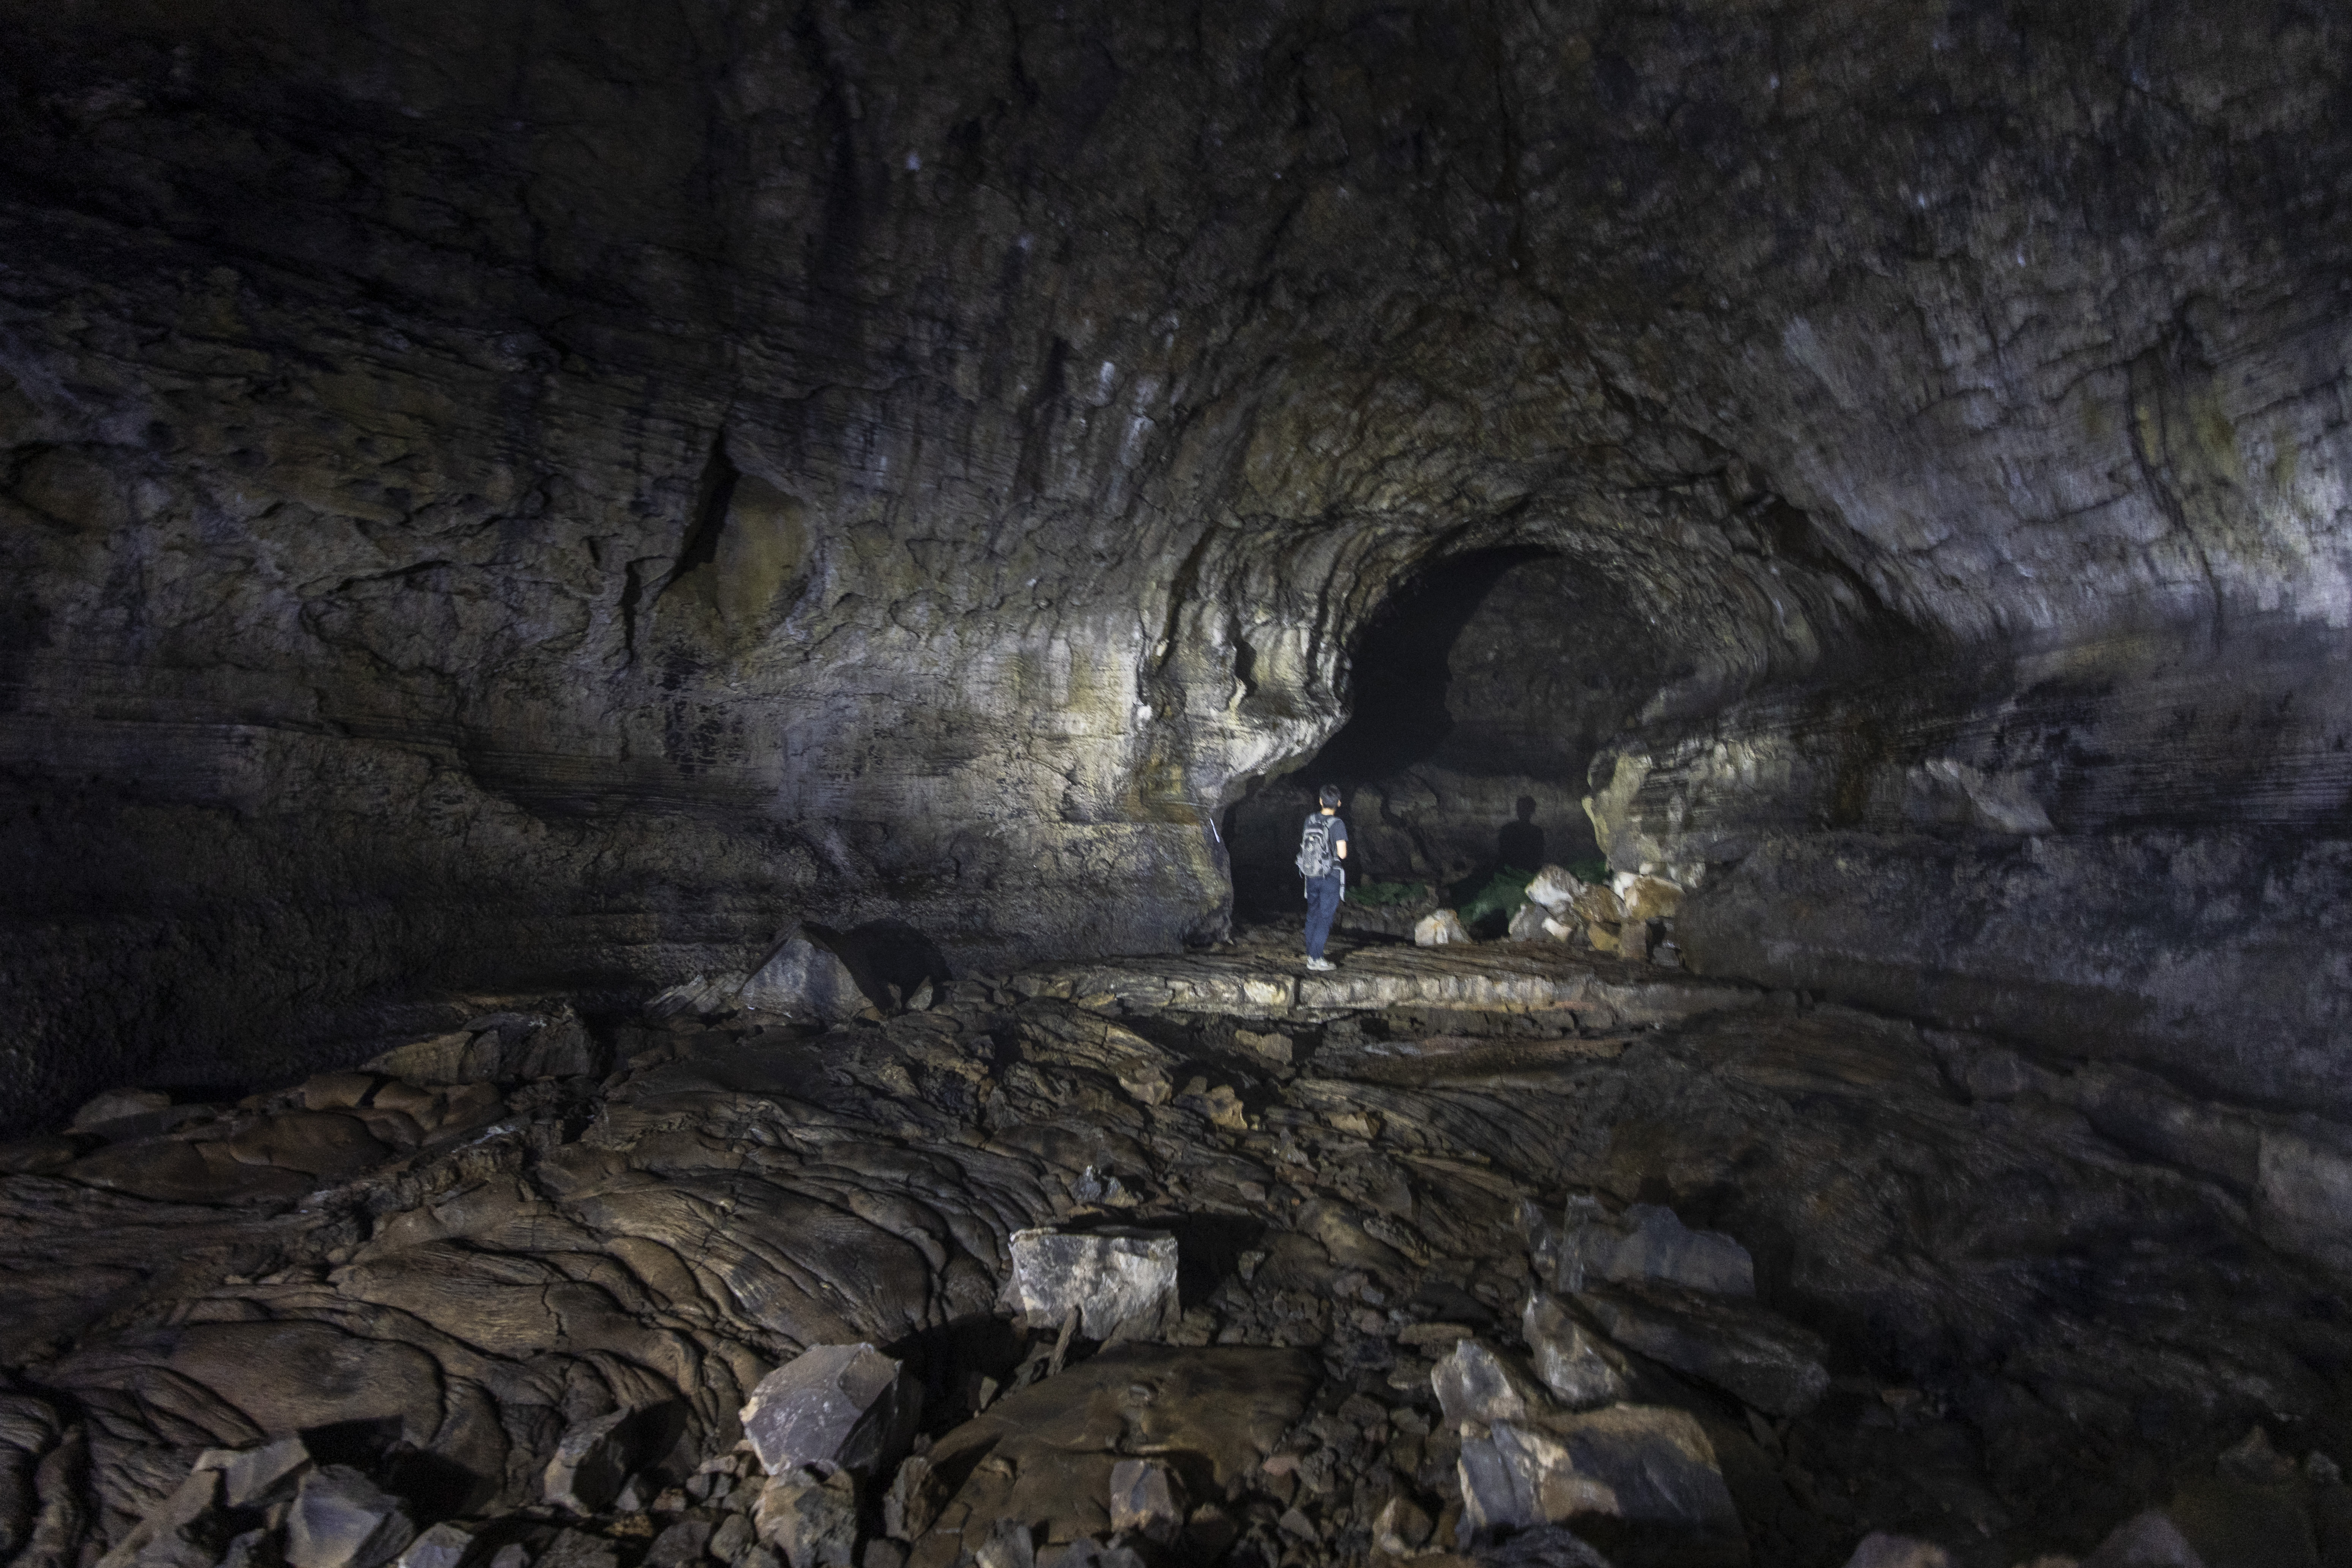 만장굴 1구간 내부에는 용암이 만든 다리 형태의 용암교가 있다.